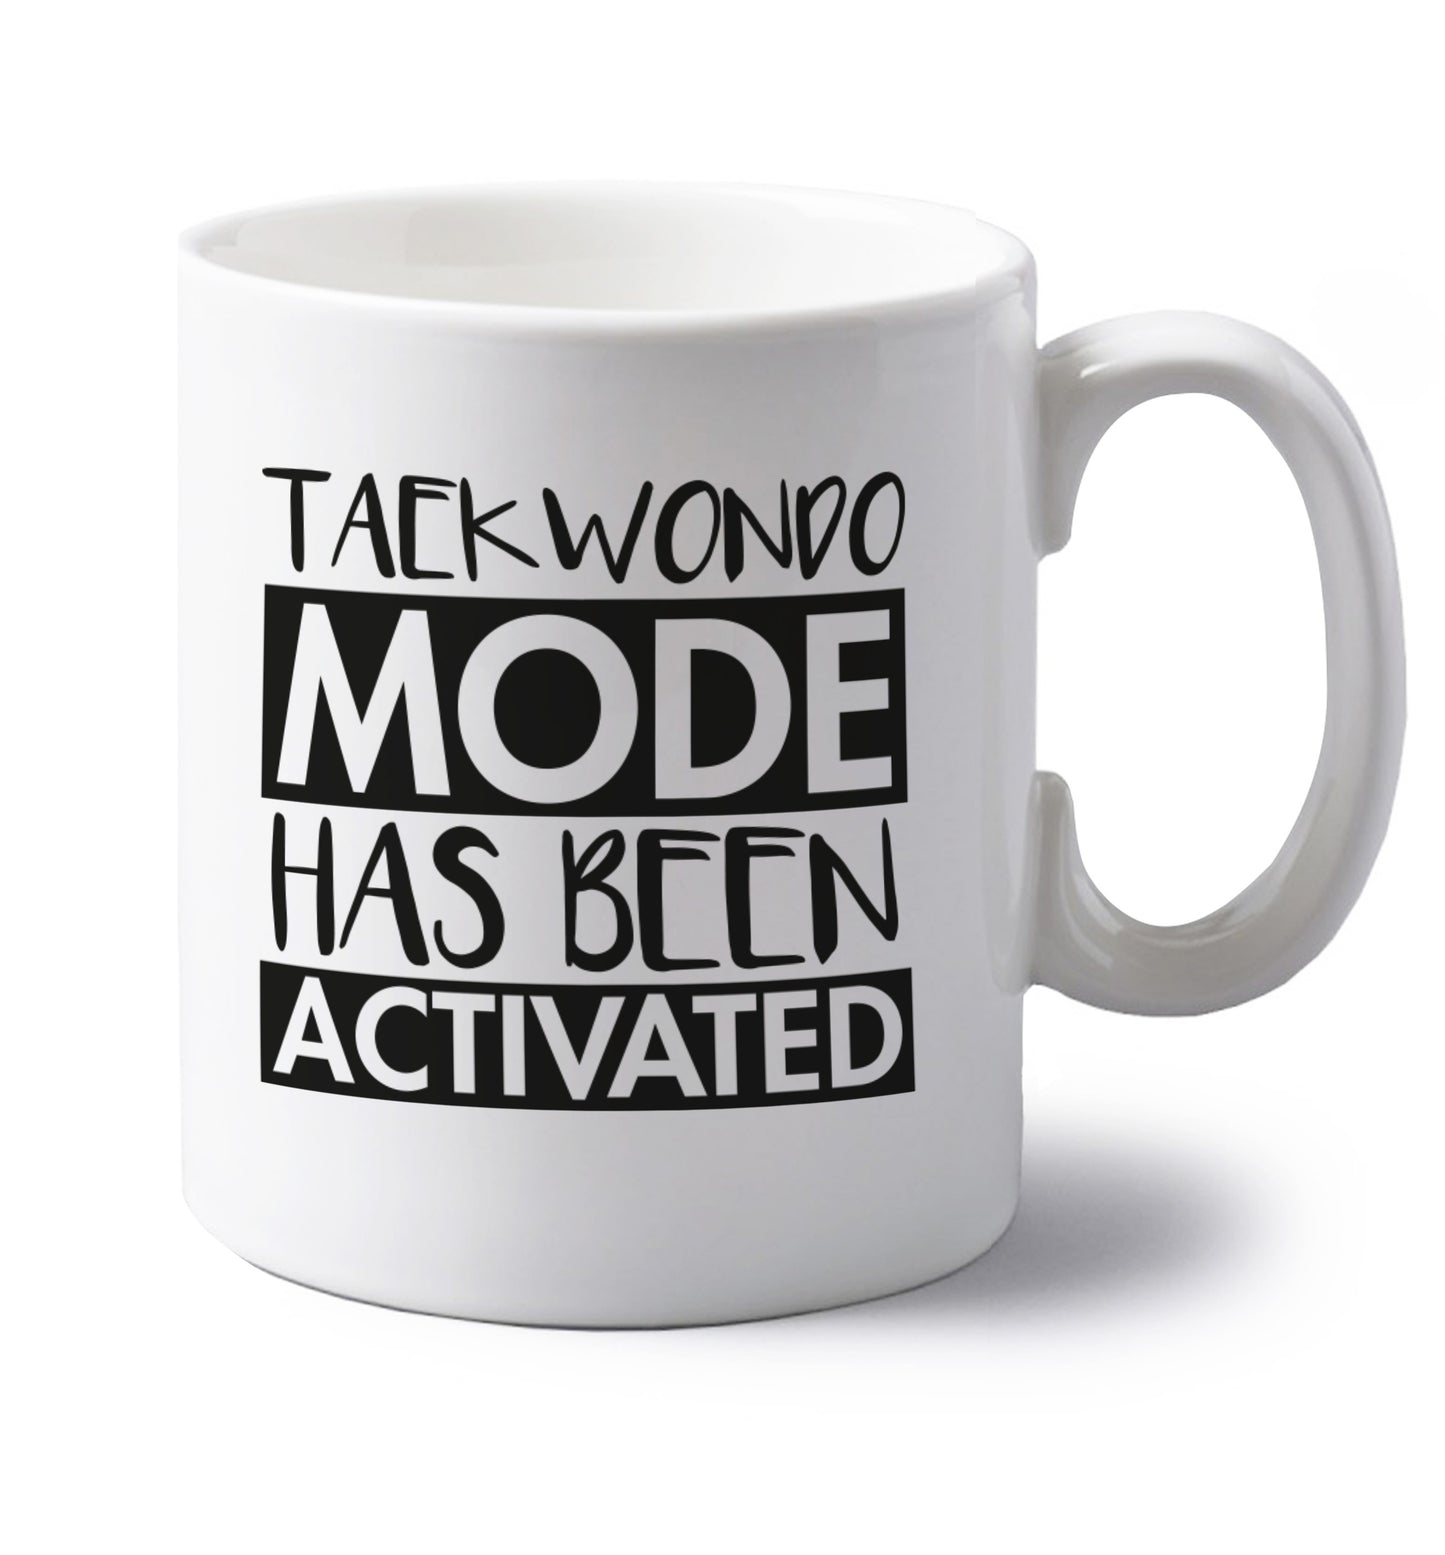 Taekwondo mode activated left handed white ceramic mug 